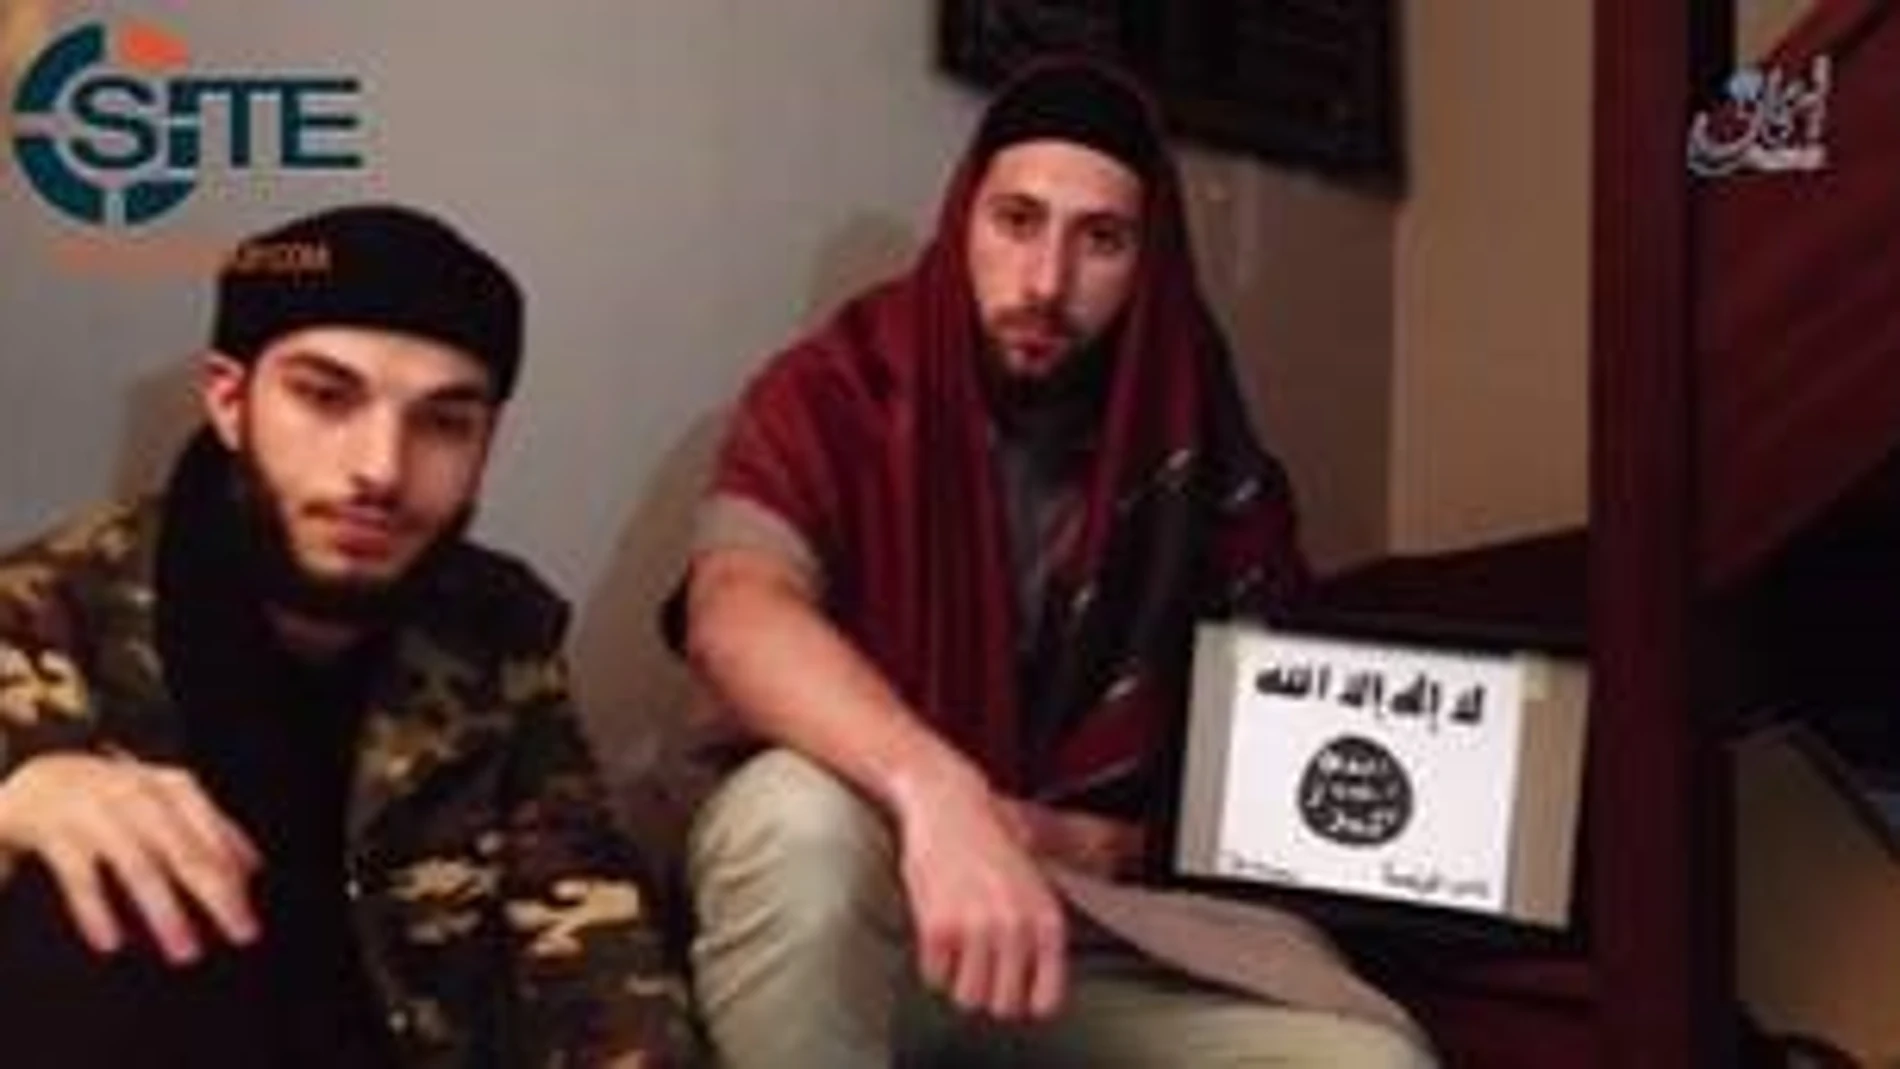 Los yihadistas de Normandía juraron lealtad a Daesh en un vídeo previo al ataque